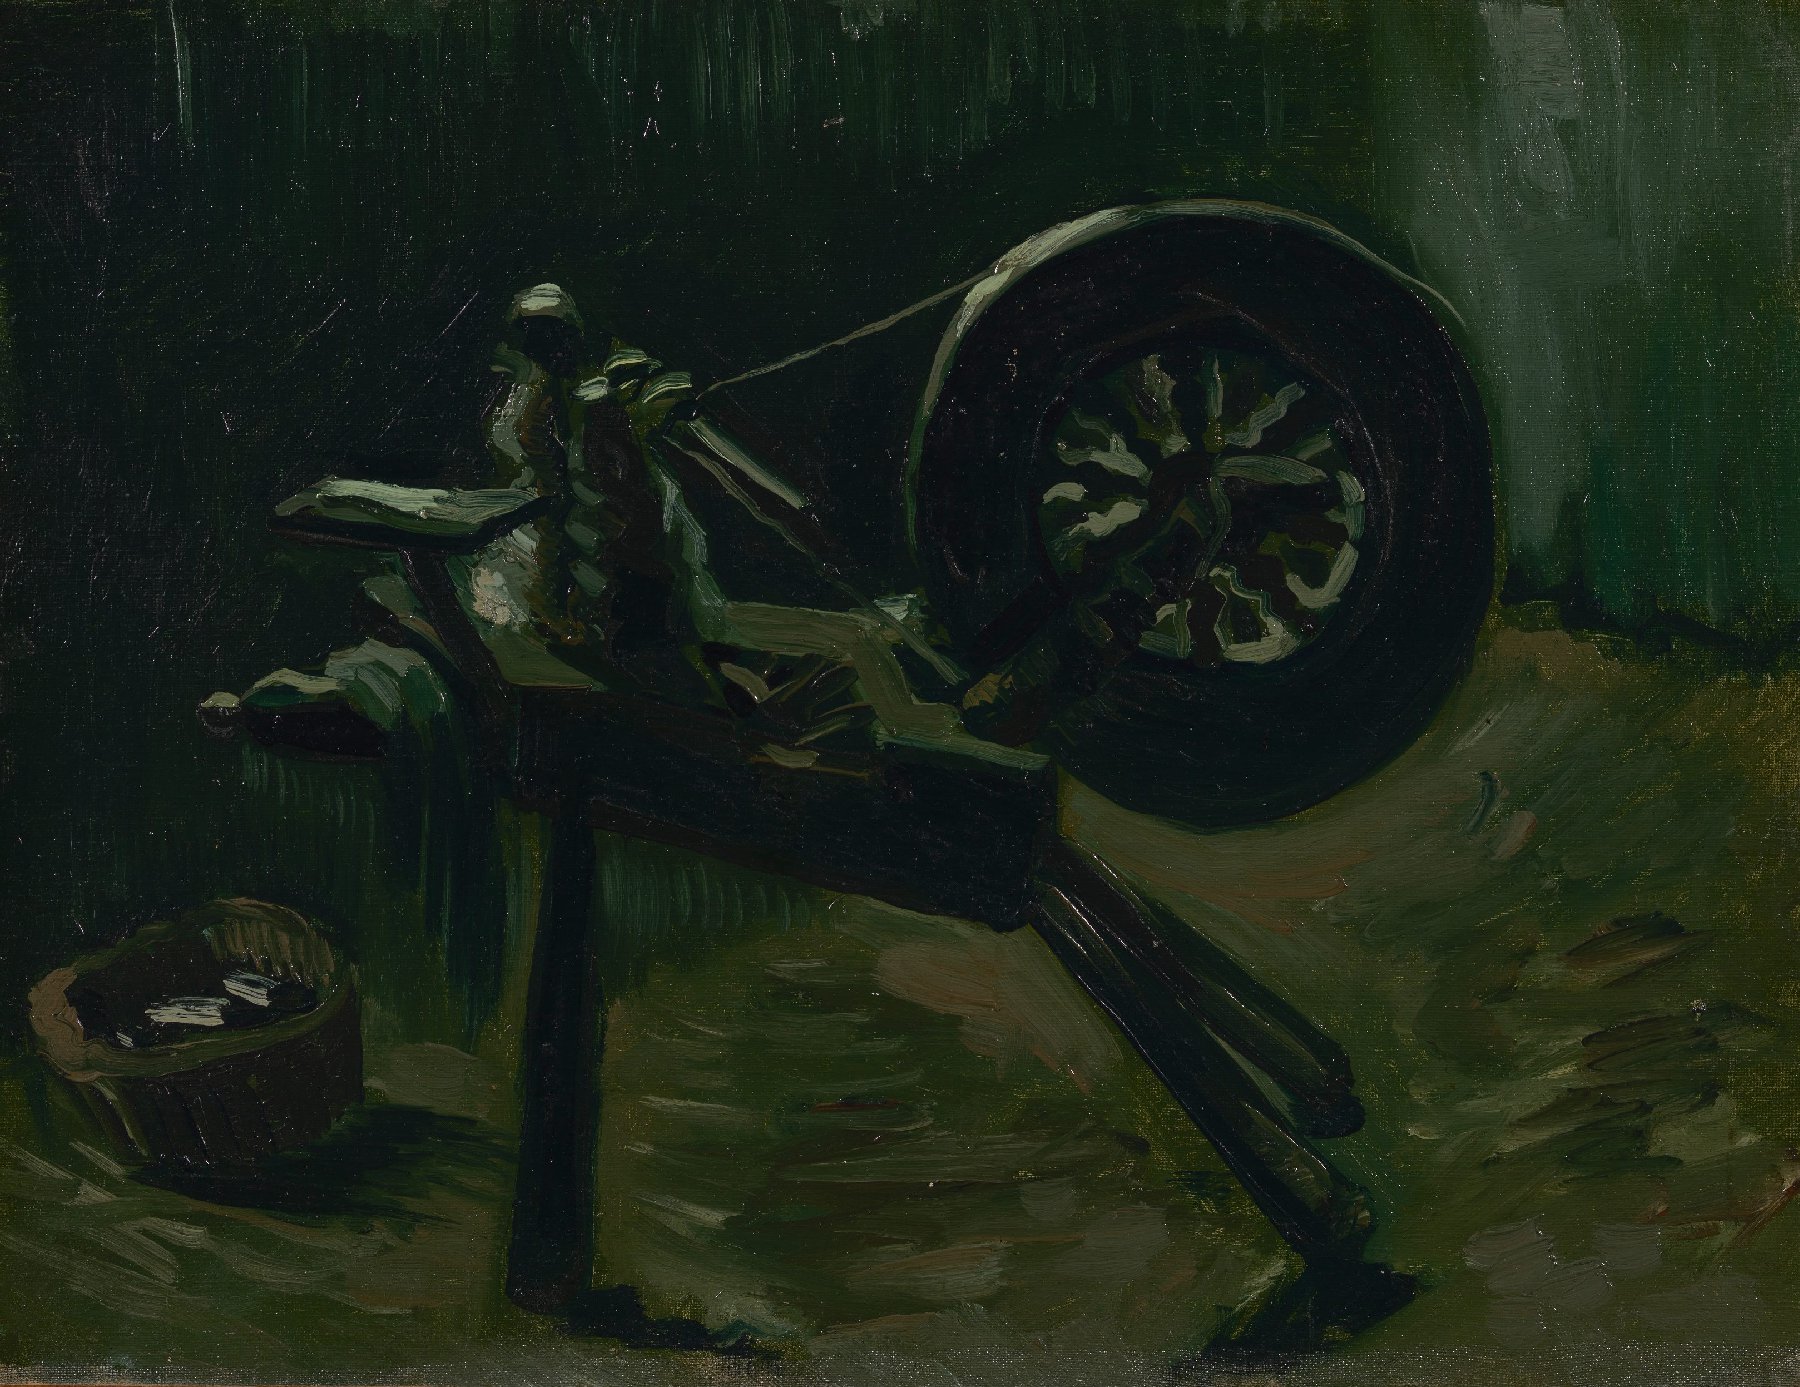 Spoelwiel Vincent van Gogh (1853 - 1890), Nuenen, maart-april 1885